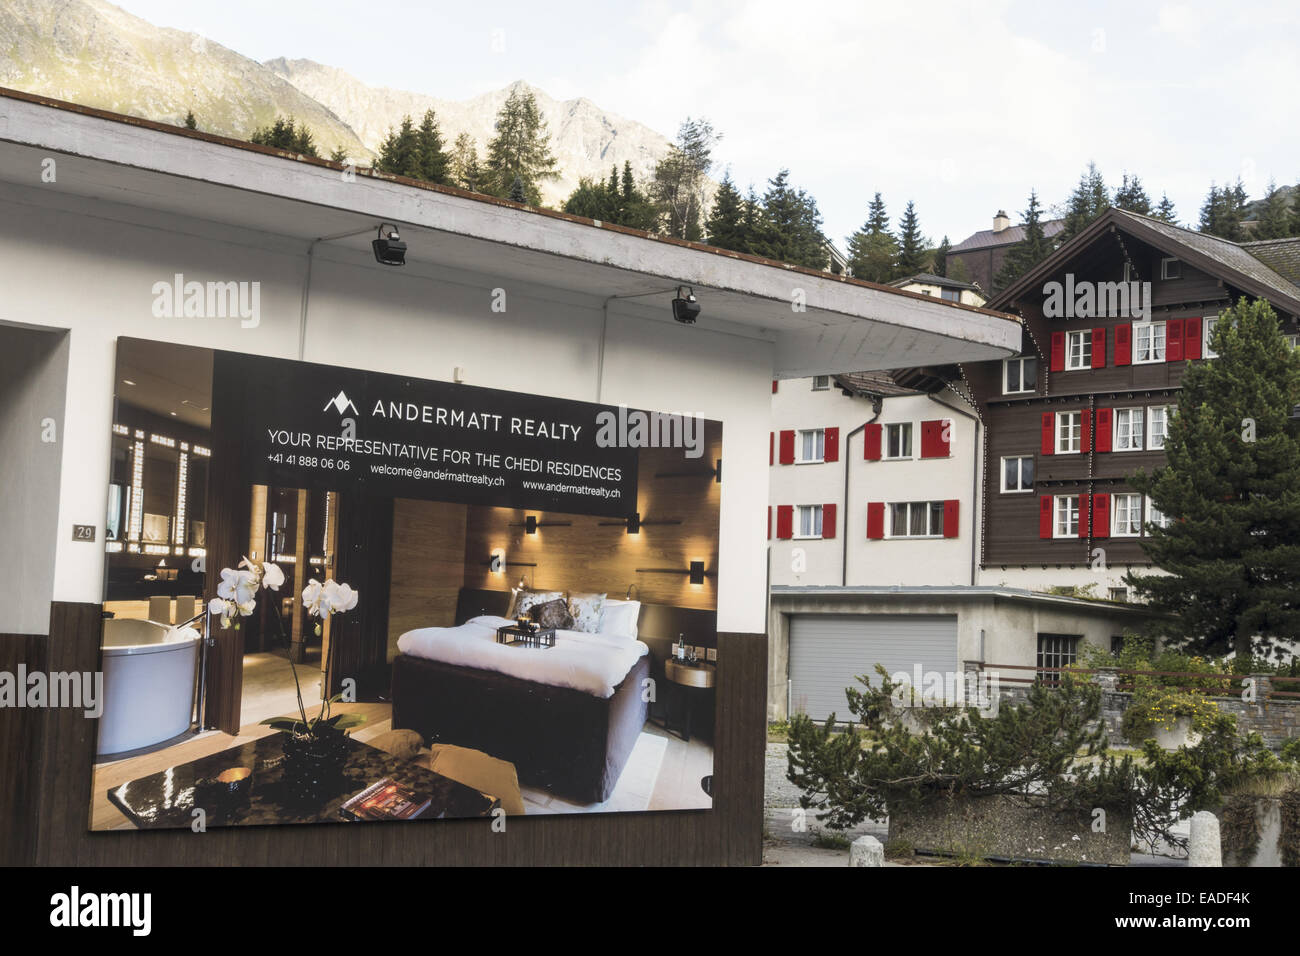 Projet de tourisme immobilier par l'investisseur Samih Sawiri, Andermatt, Uri, Suisse Banque D'Images